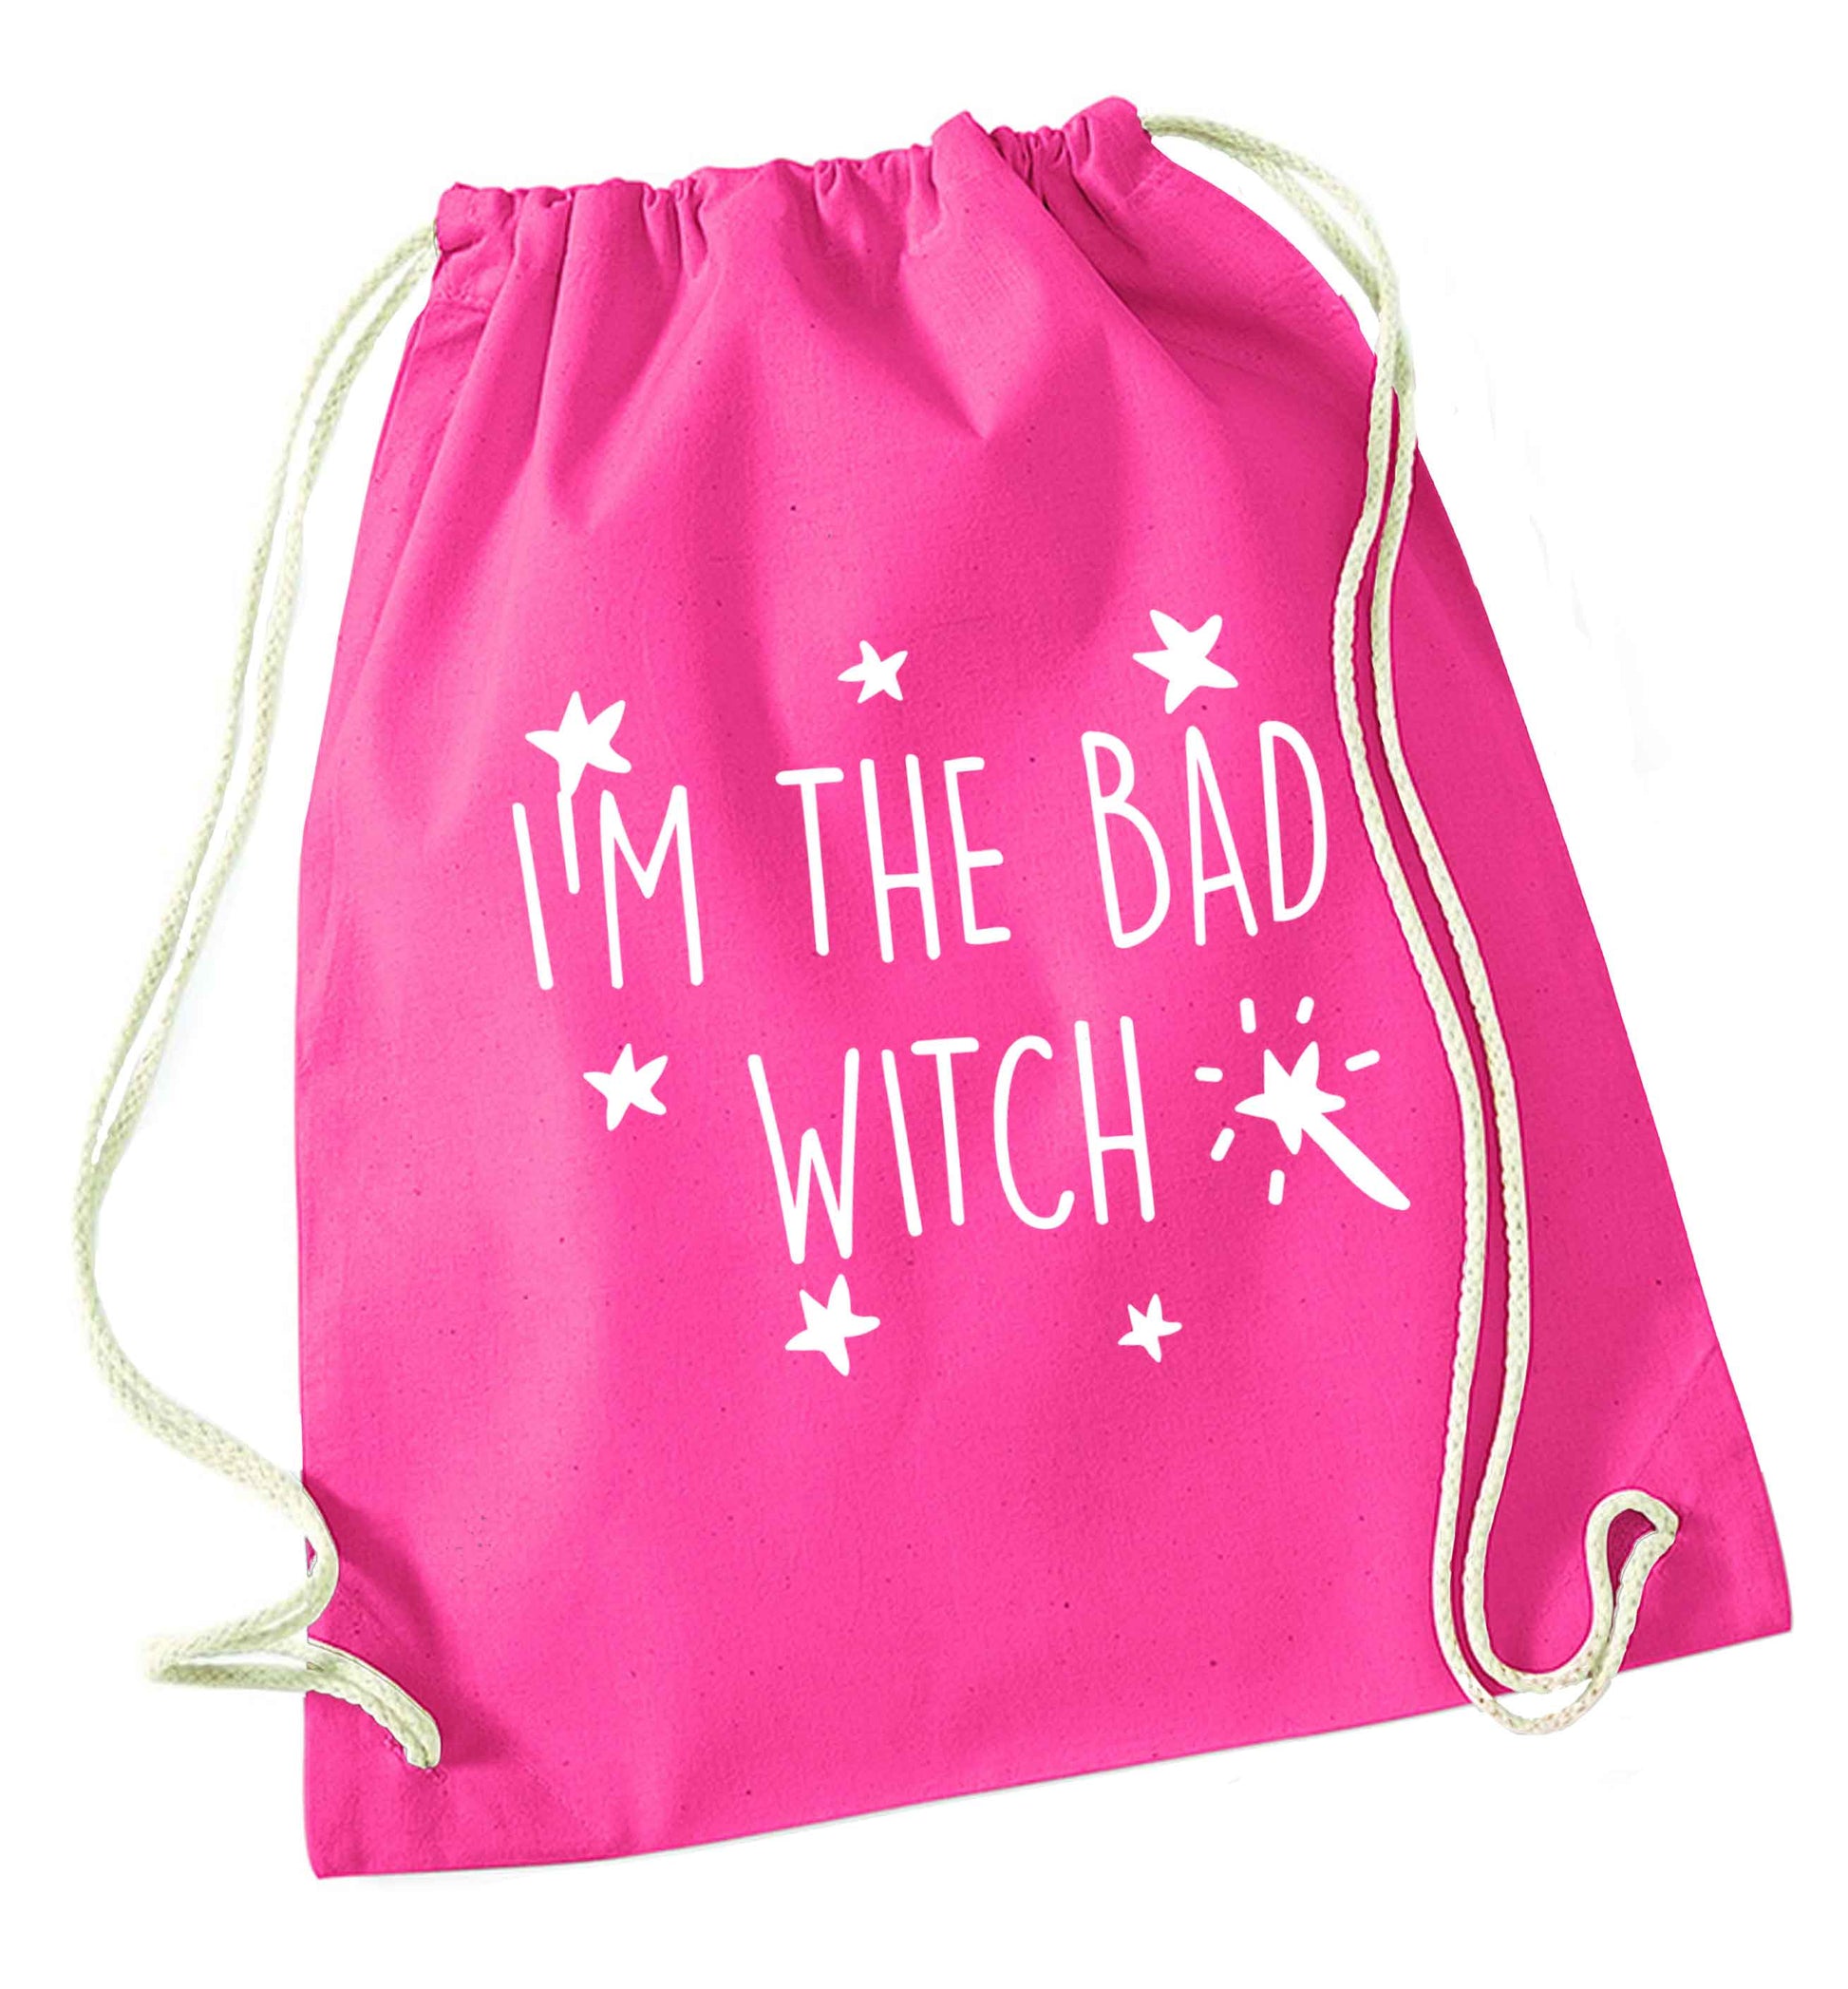 Bad witch pink drawstring bag